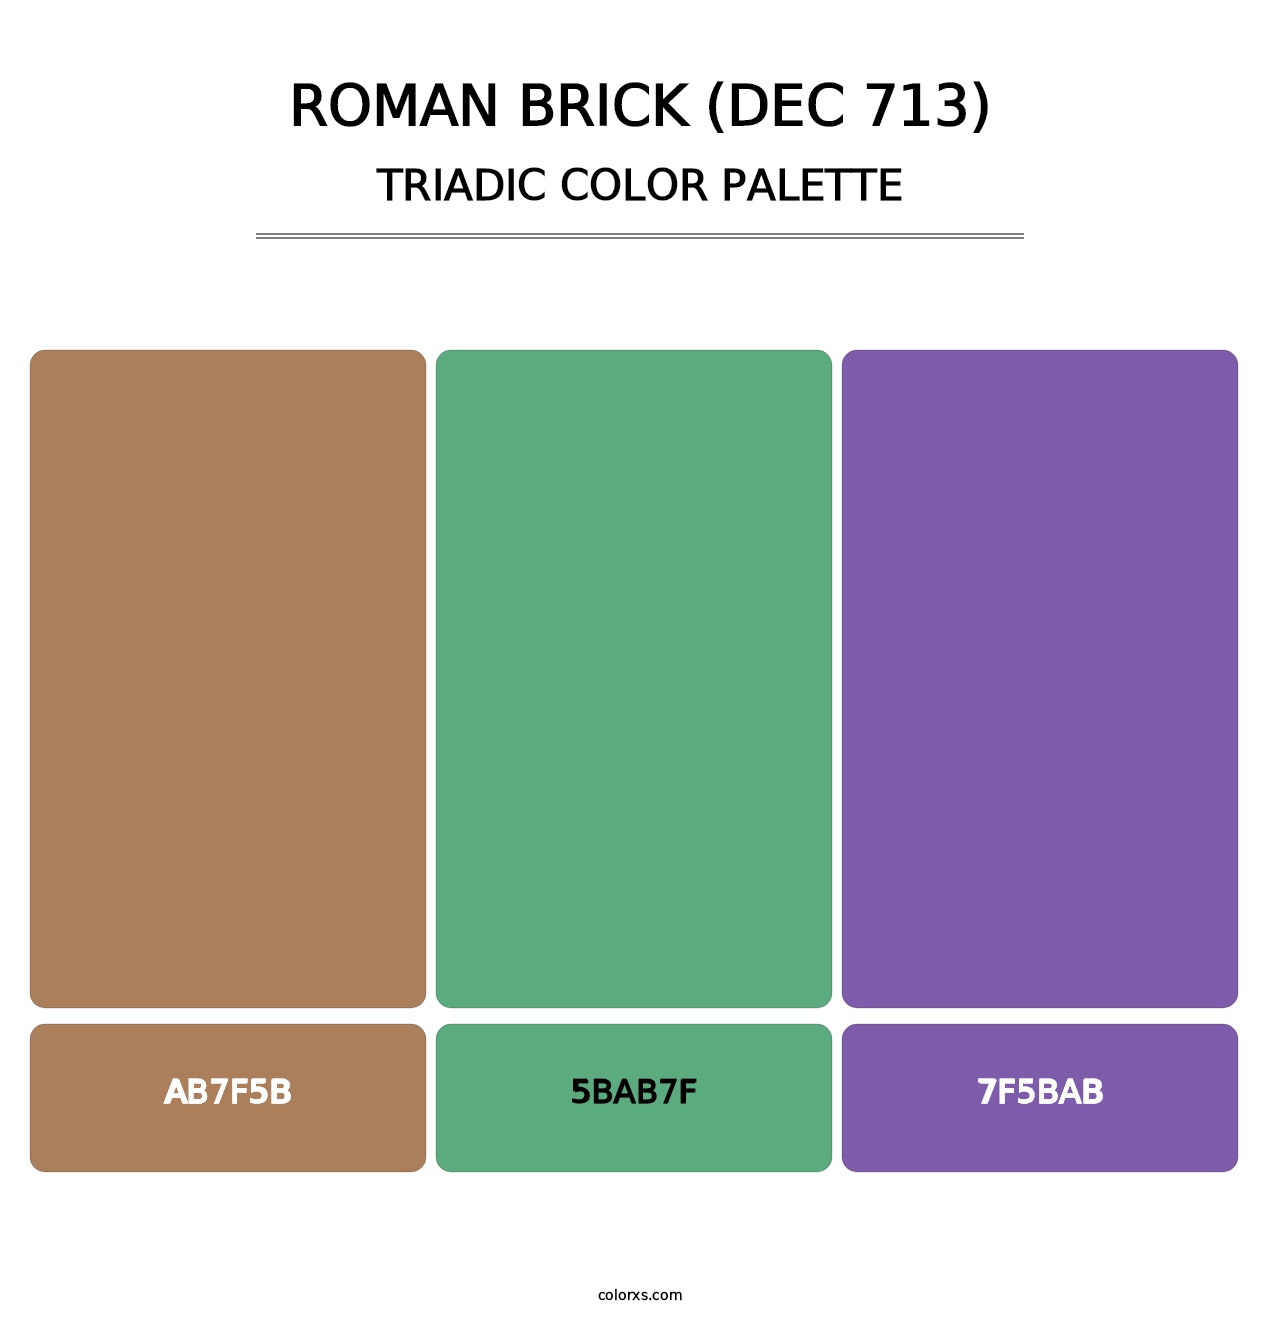 Roman Brick (DEC 713) - Triadic Color Palette